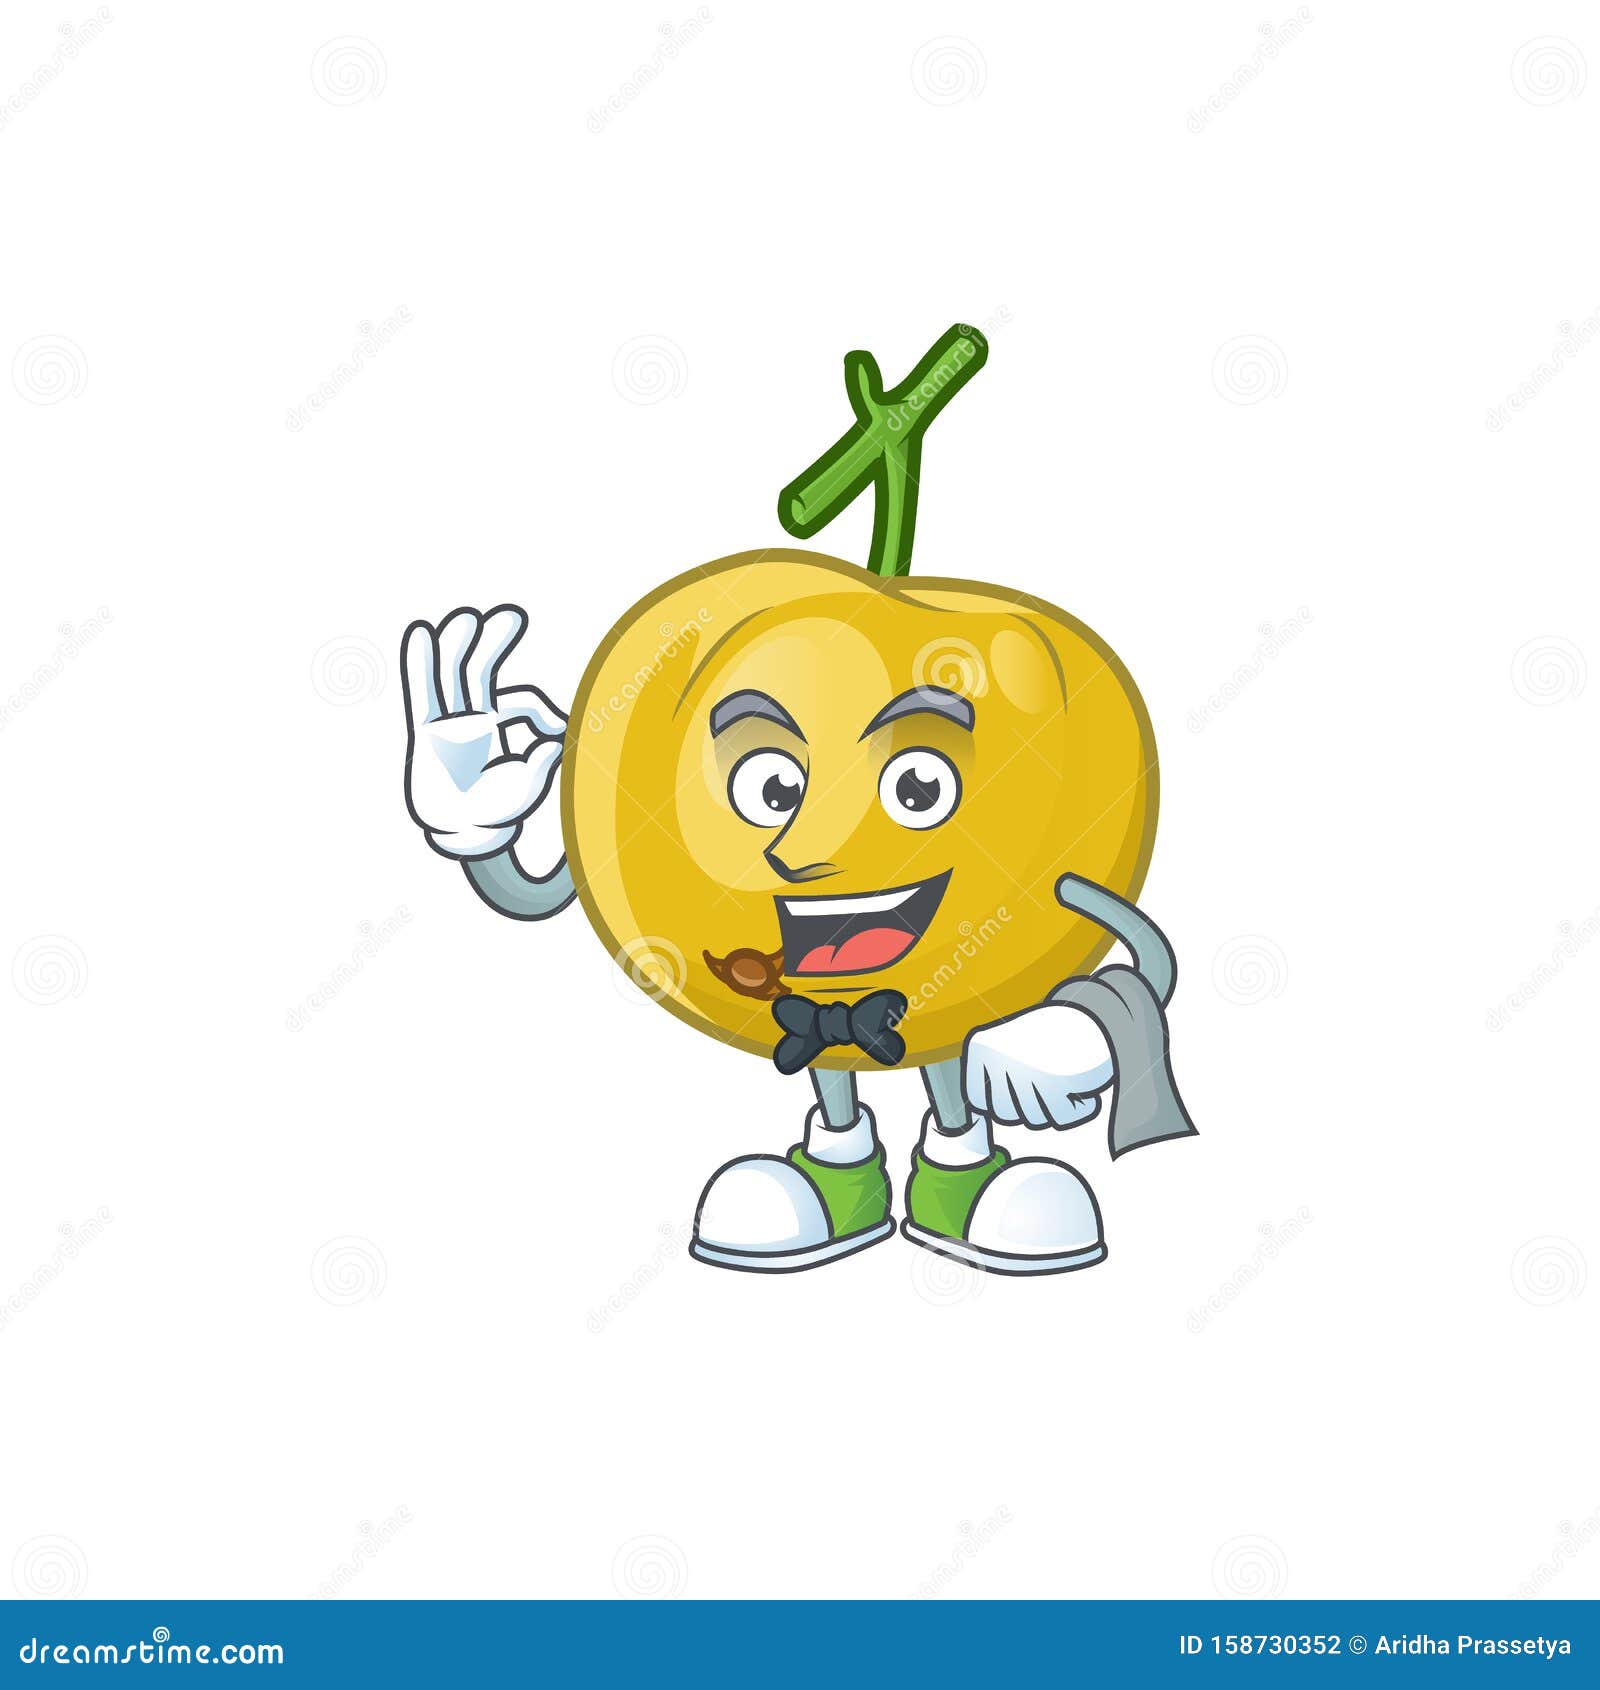 waiter ripe araza cartoon with character mascot